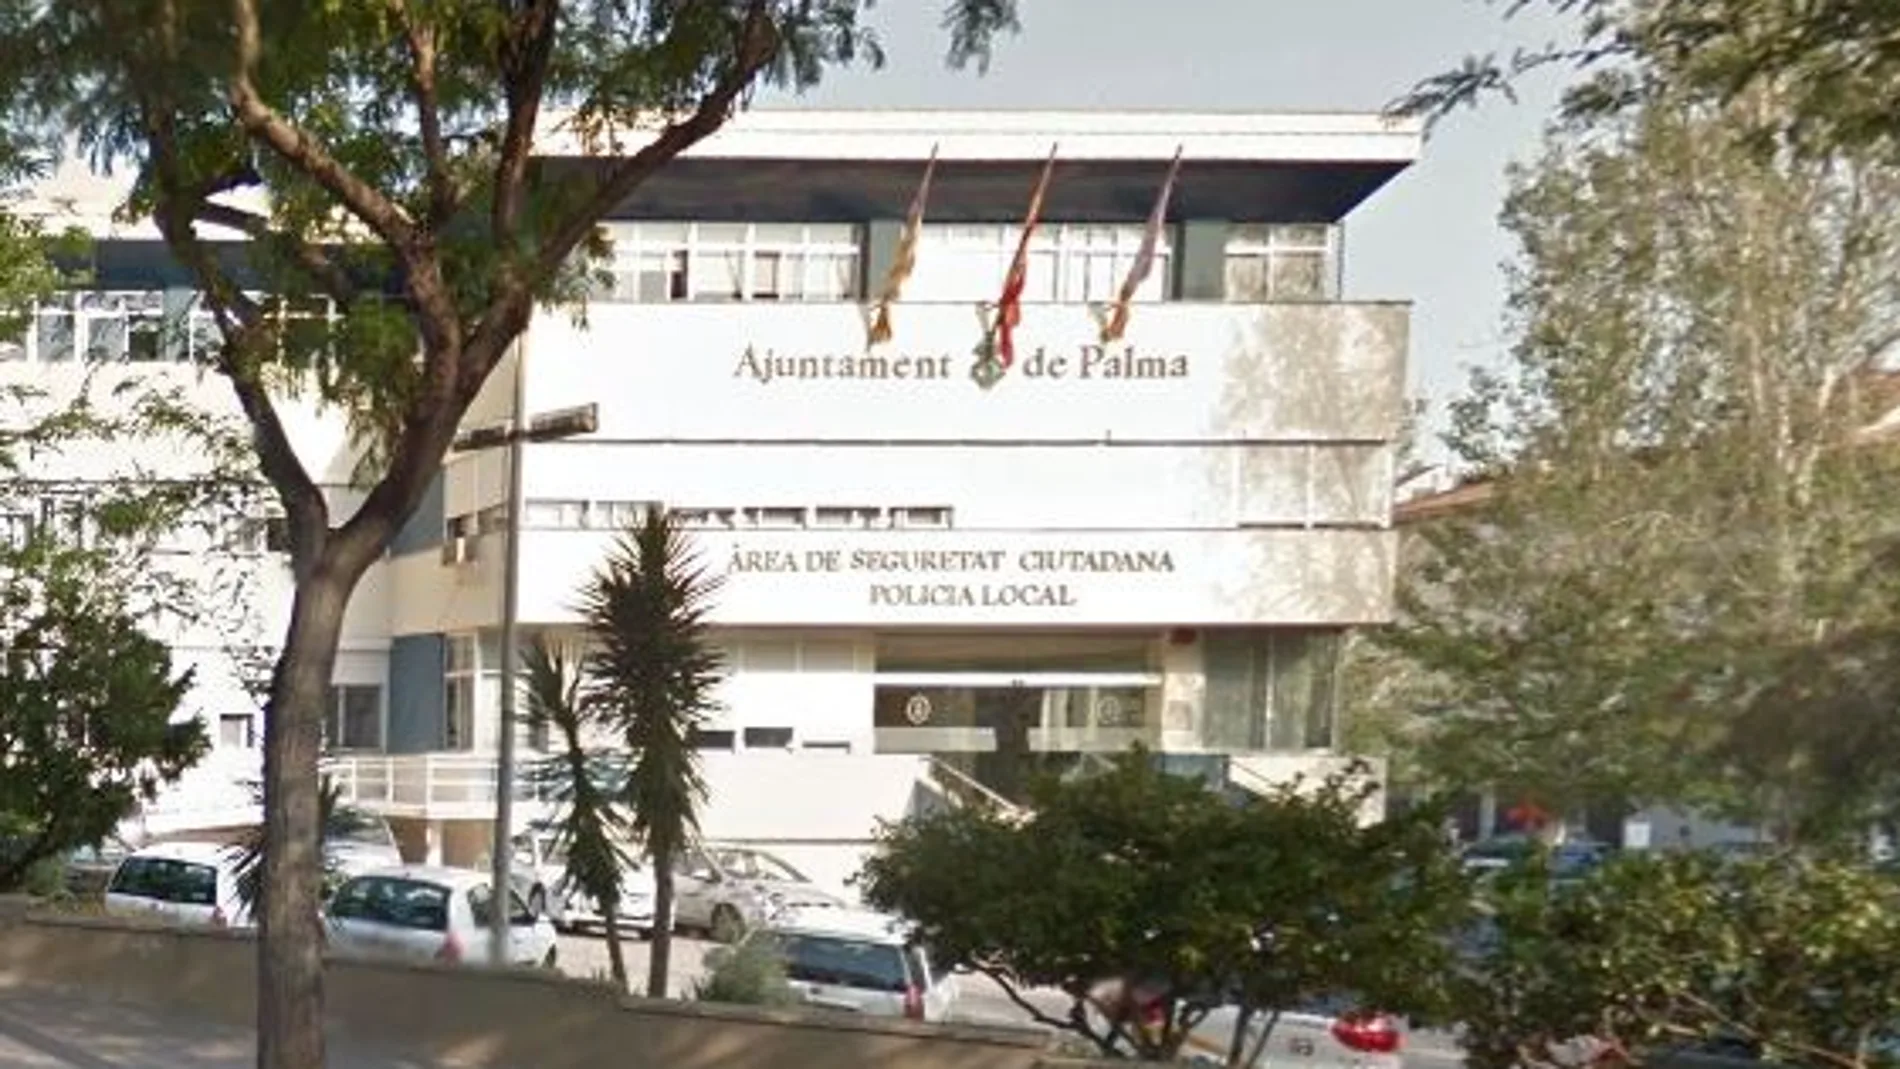 El cuerpo sin vida del detenido fue localizado en los calabozos de la Policía Local de Palma